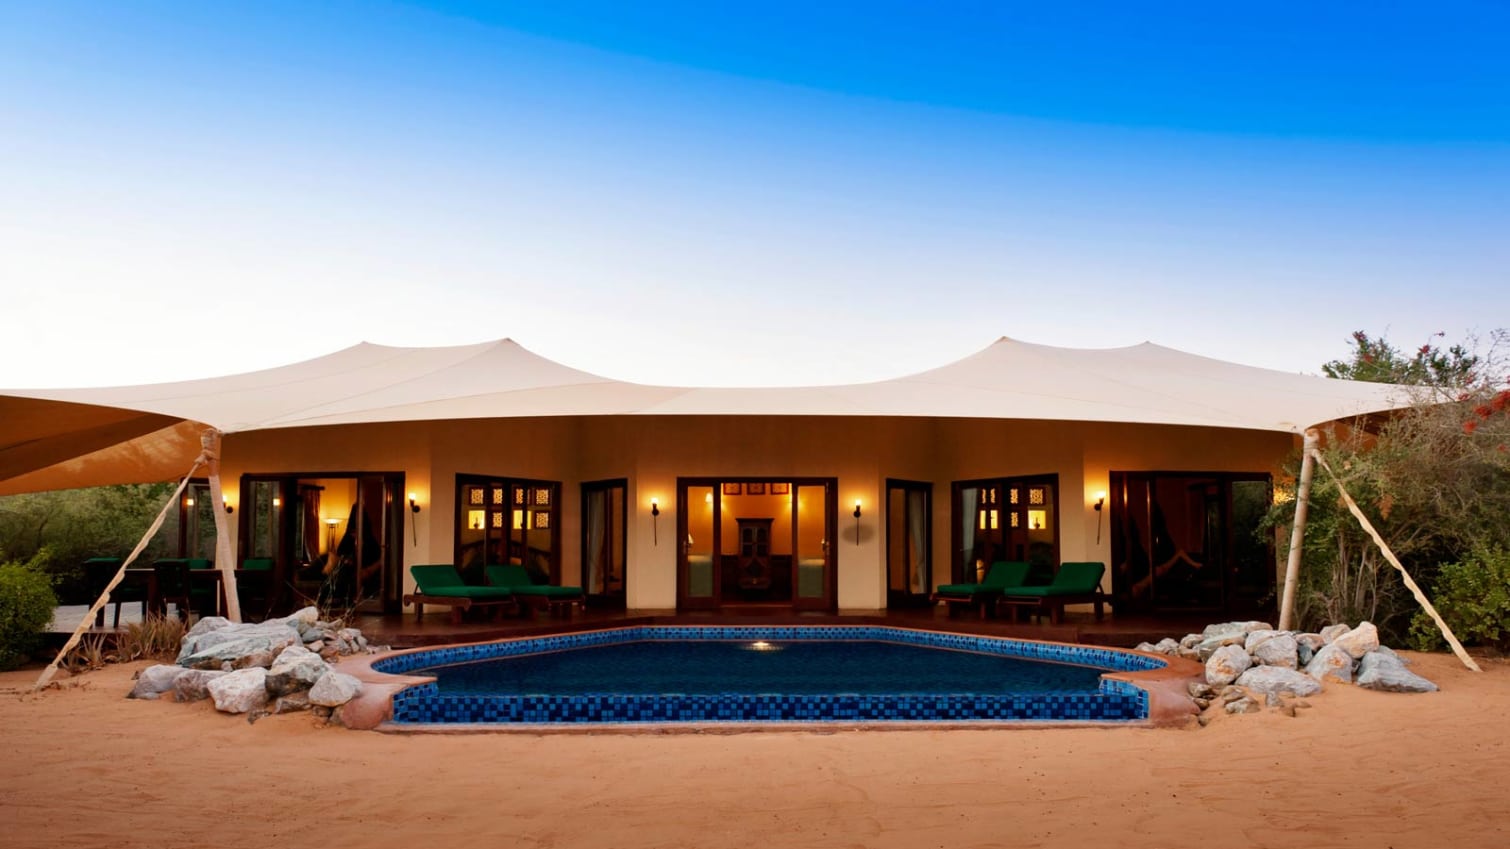 3.	Al Maha Desert Resort and Spa